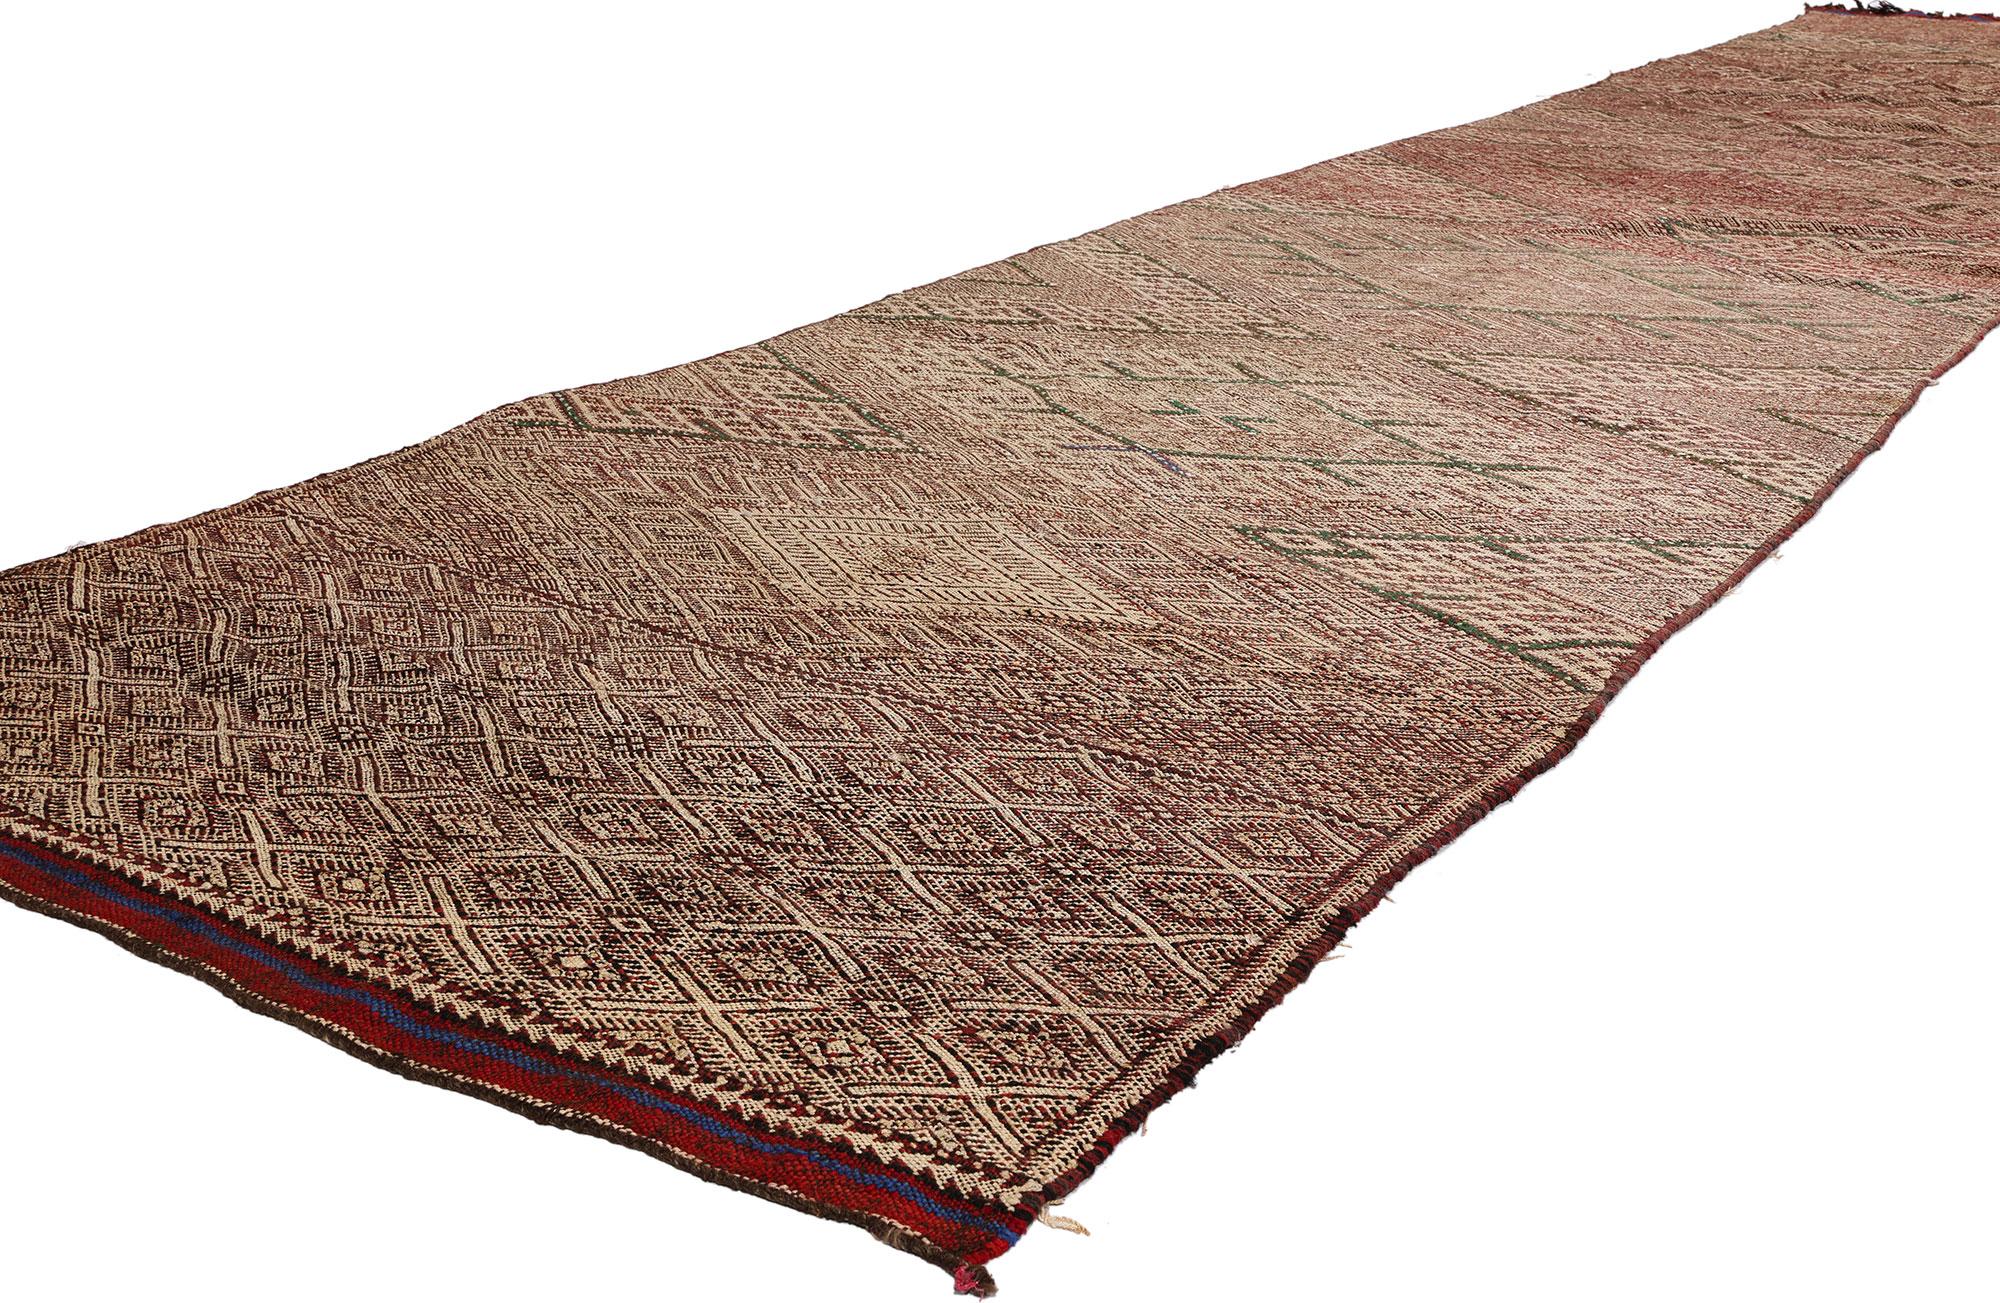 21843 Vintage Zemmour Marokkanischer Kilim Teppich Läufer, 03'04 x 17'06. Sehen Sie sich die bezaubernde Geschichte an, die in jede Faser dieses böhmisch inspirierten Wunderwerks eingewoben ist - ein handgewebter marokkanischer Kelimteppich aus